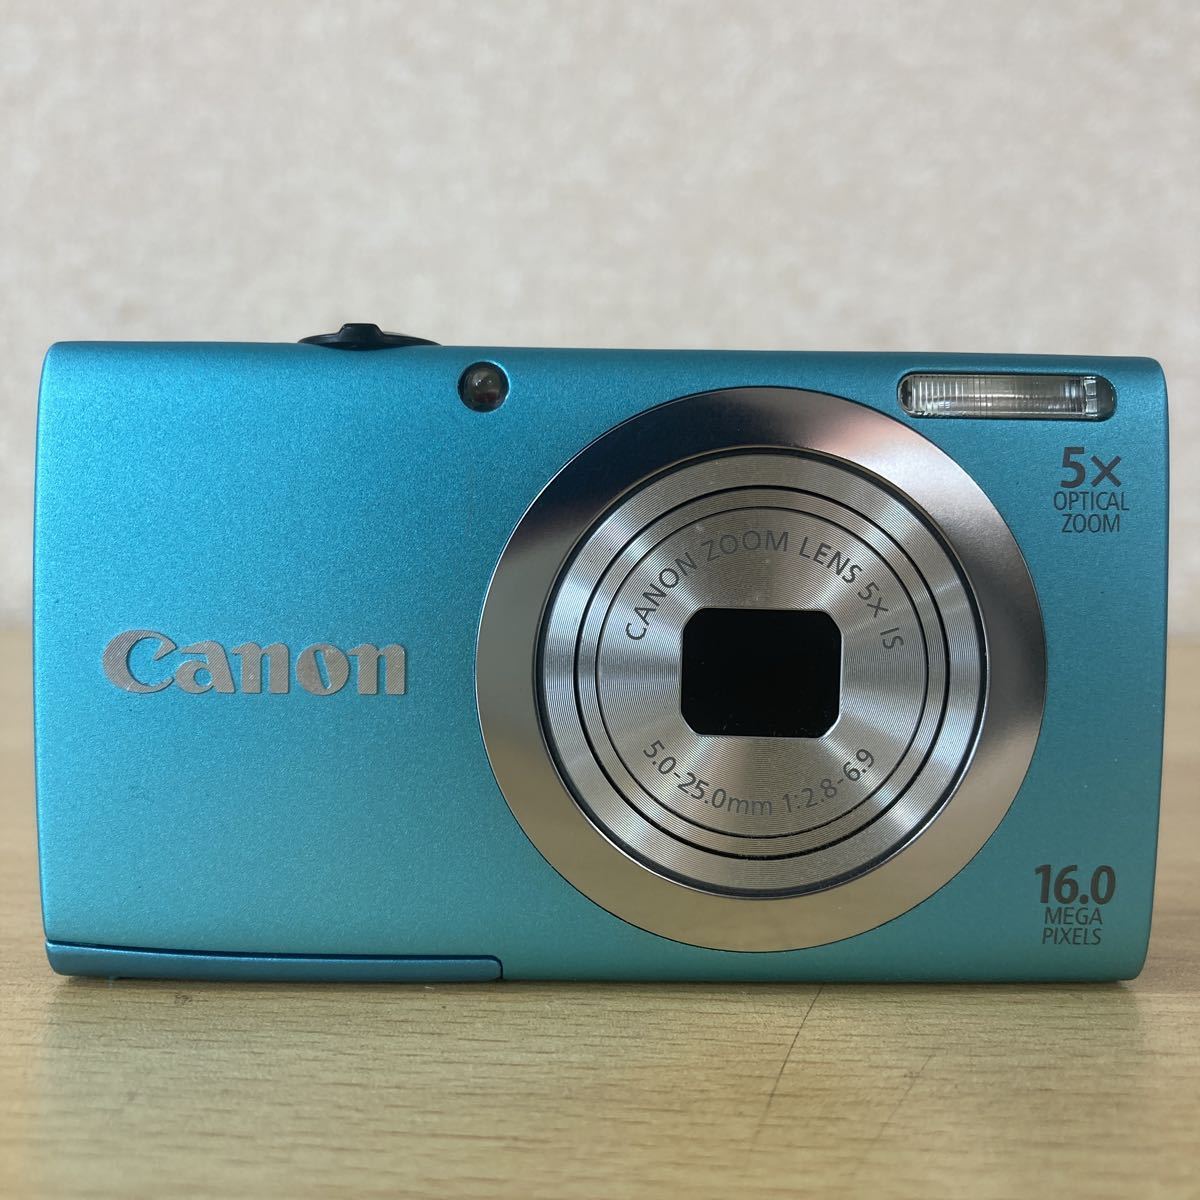 Canon キャノン PC1731 PowerShot パワーショット A2400 IS デジタル 